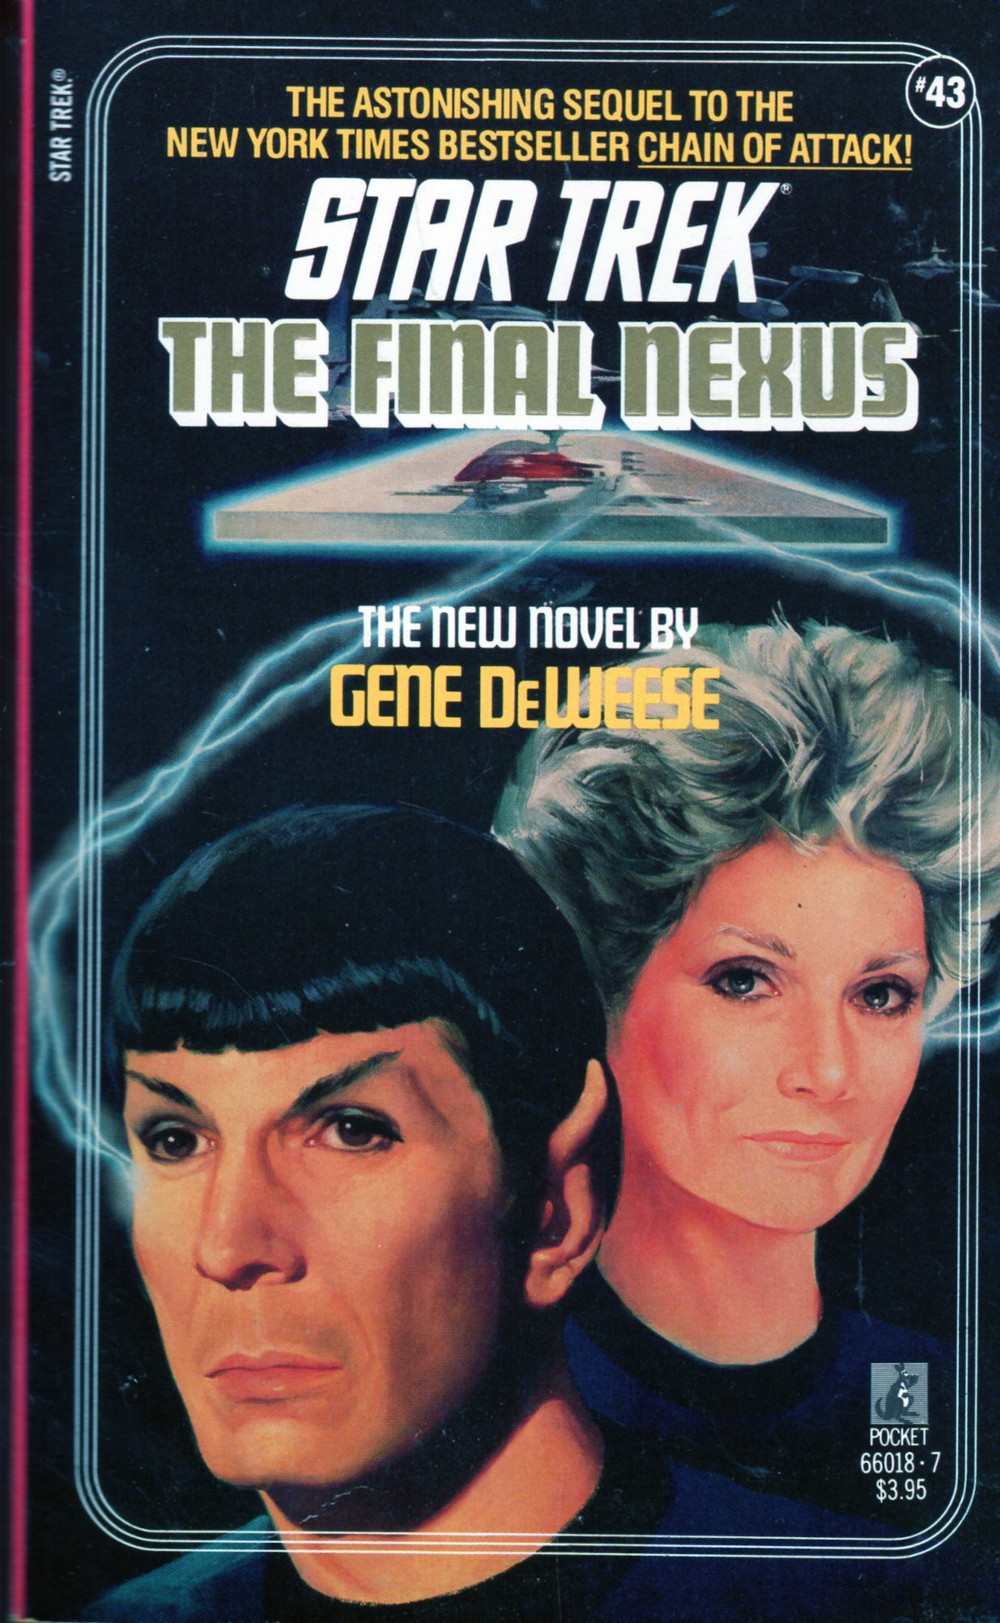 The Final Nexus (Dec 1988)